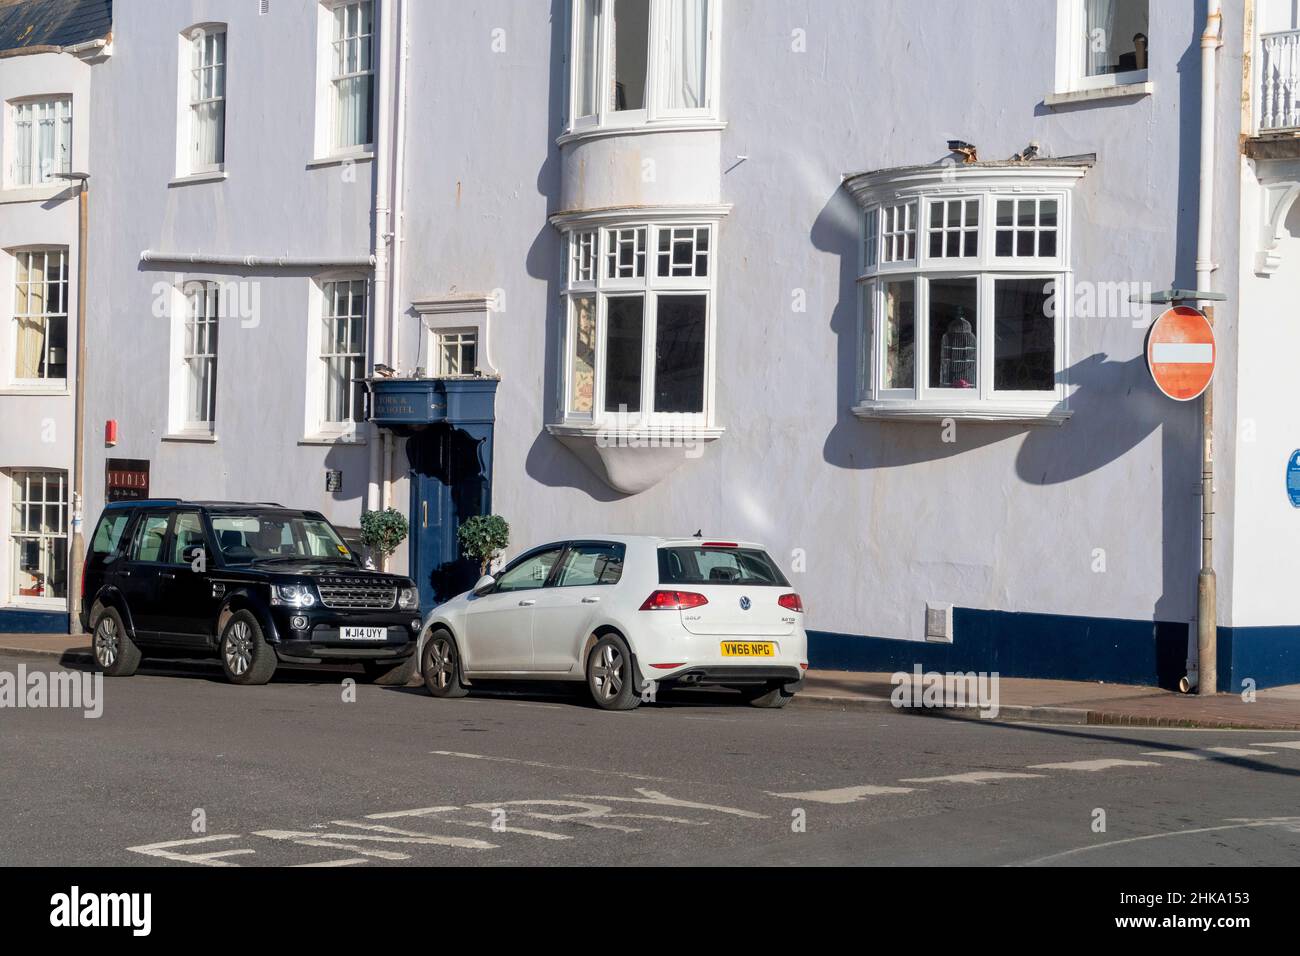 Une voiture garée dans la mauvaise direction sur une rue à sens unique, Sidmouth, Devon Banque D'Images